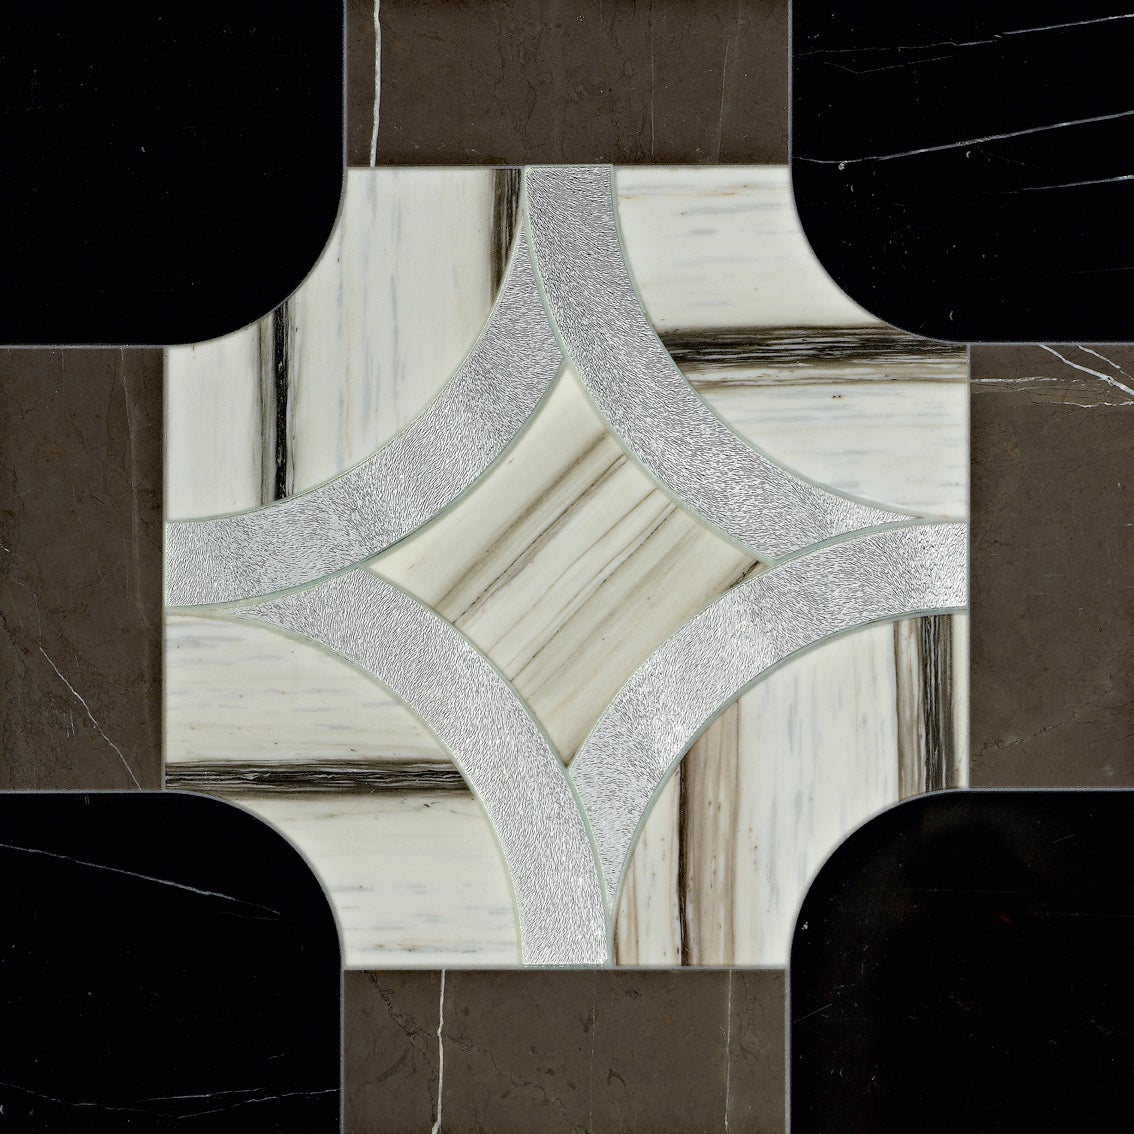 Tiles de sol coupés au jet d'eau disponibles en combinaison de différents marbres